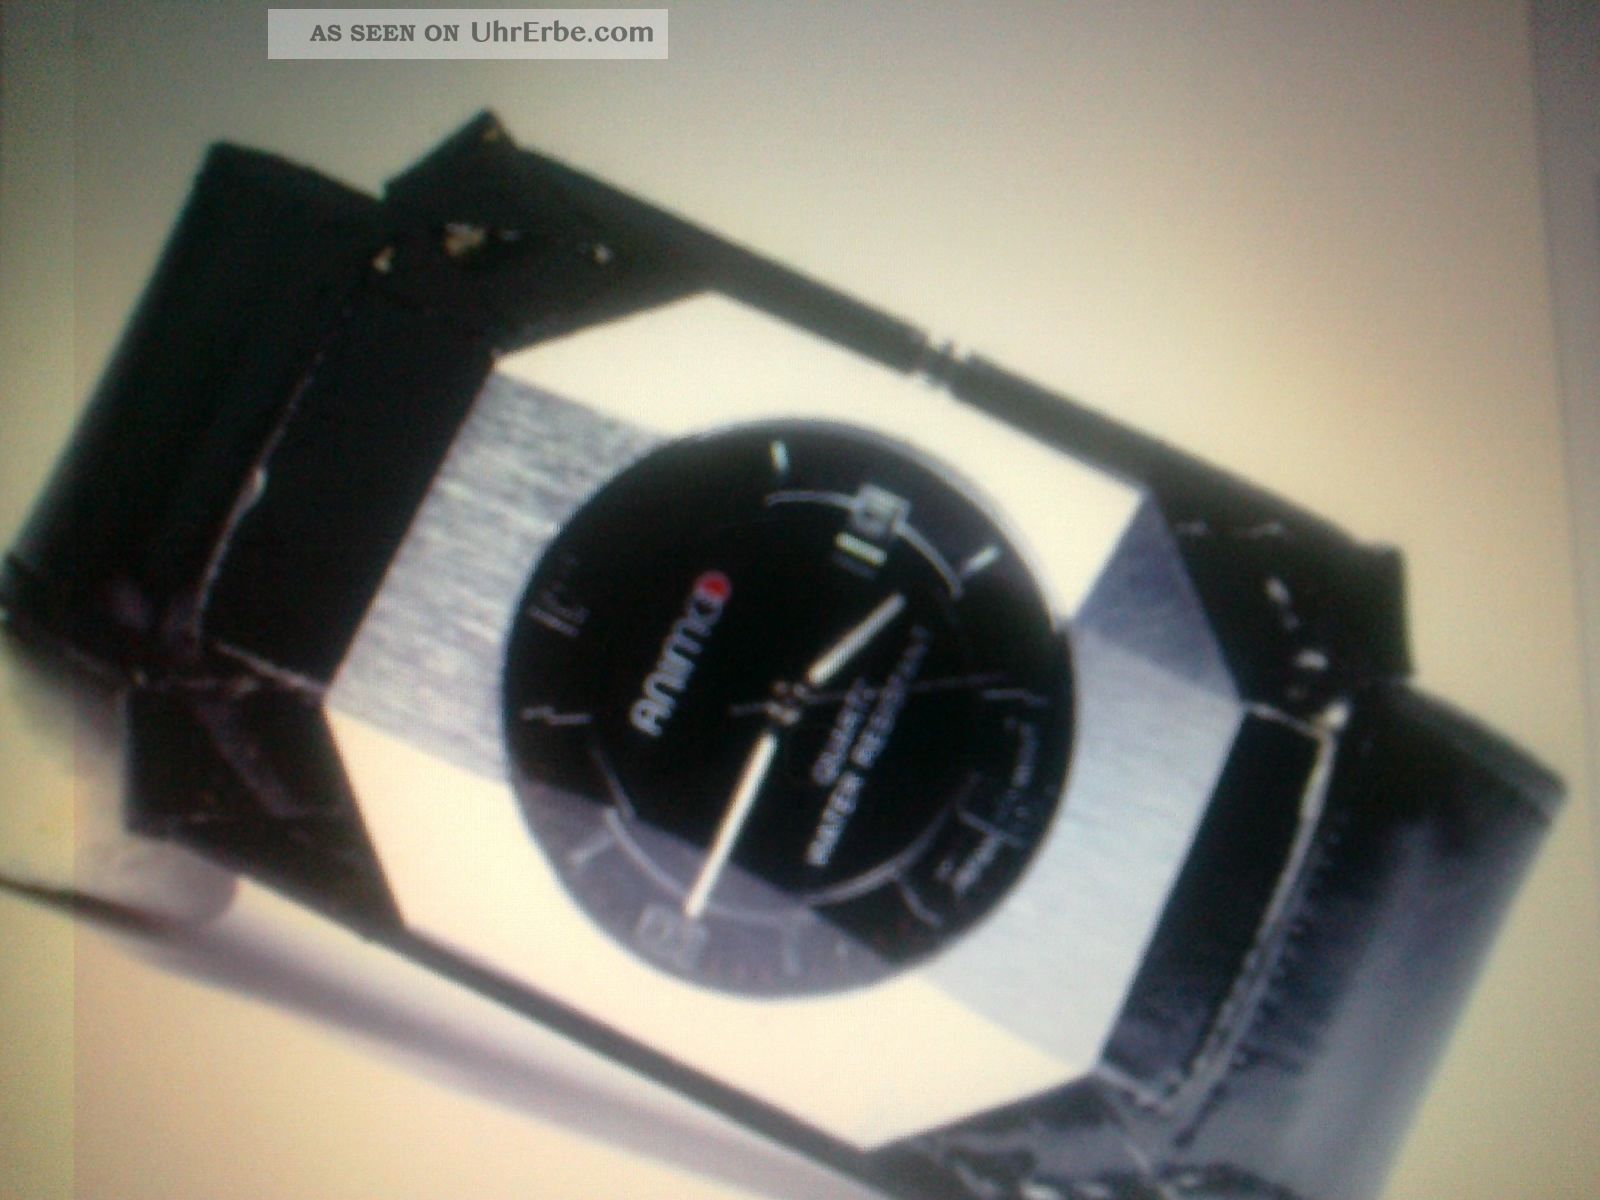 Herrenuhr Silber/schwarz Edel Design Retro Uboot Look Armbanduhren Bild